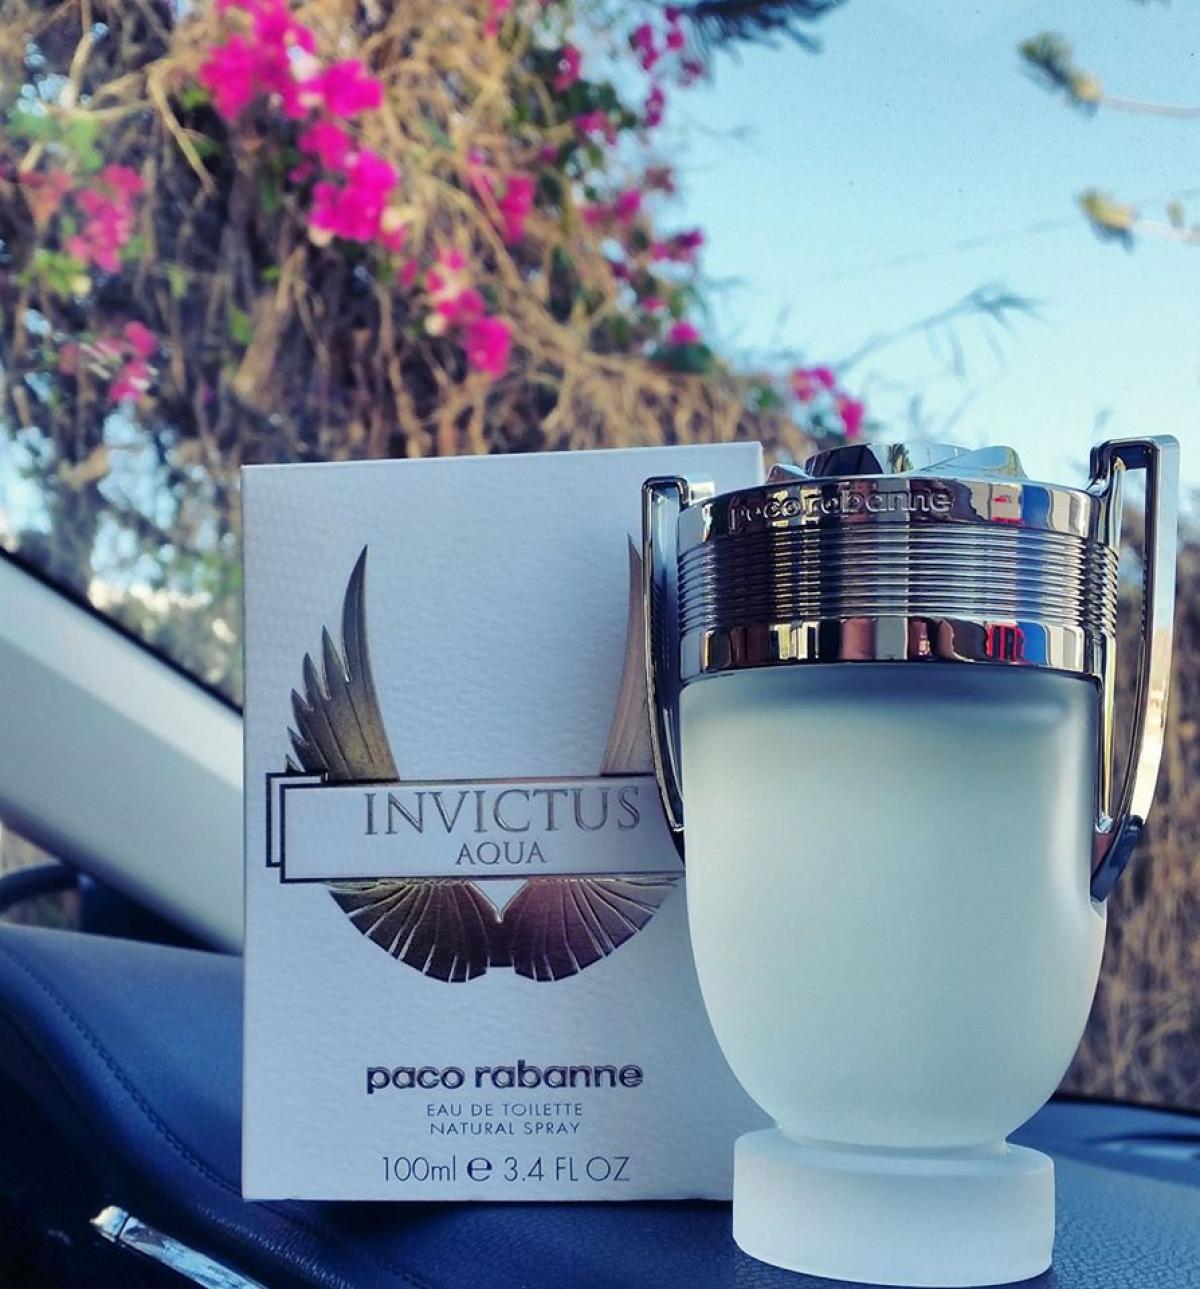 Invictus Aqua Paco Rabanne cologne - a fragrance for men 2016